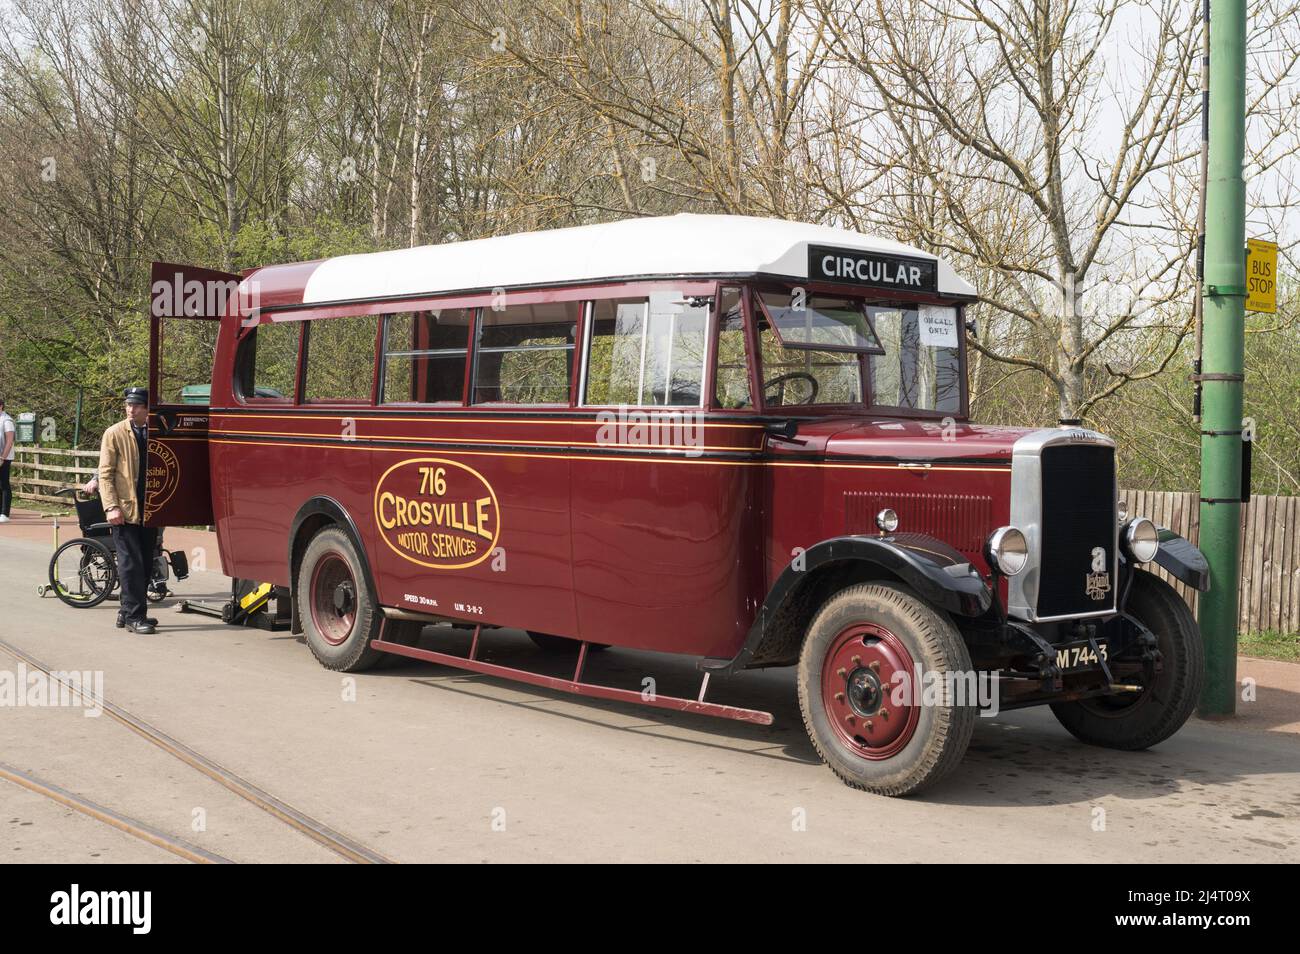 Crosville 716, un autobus Leyland Cub restauré de 1933, modifié pour transporter des fauteuils roulants, au musée Beamish, dans le nord-est de l'Angleterre, au Royaume-Uni Banque D'Images